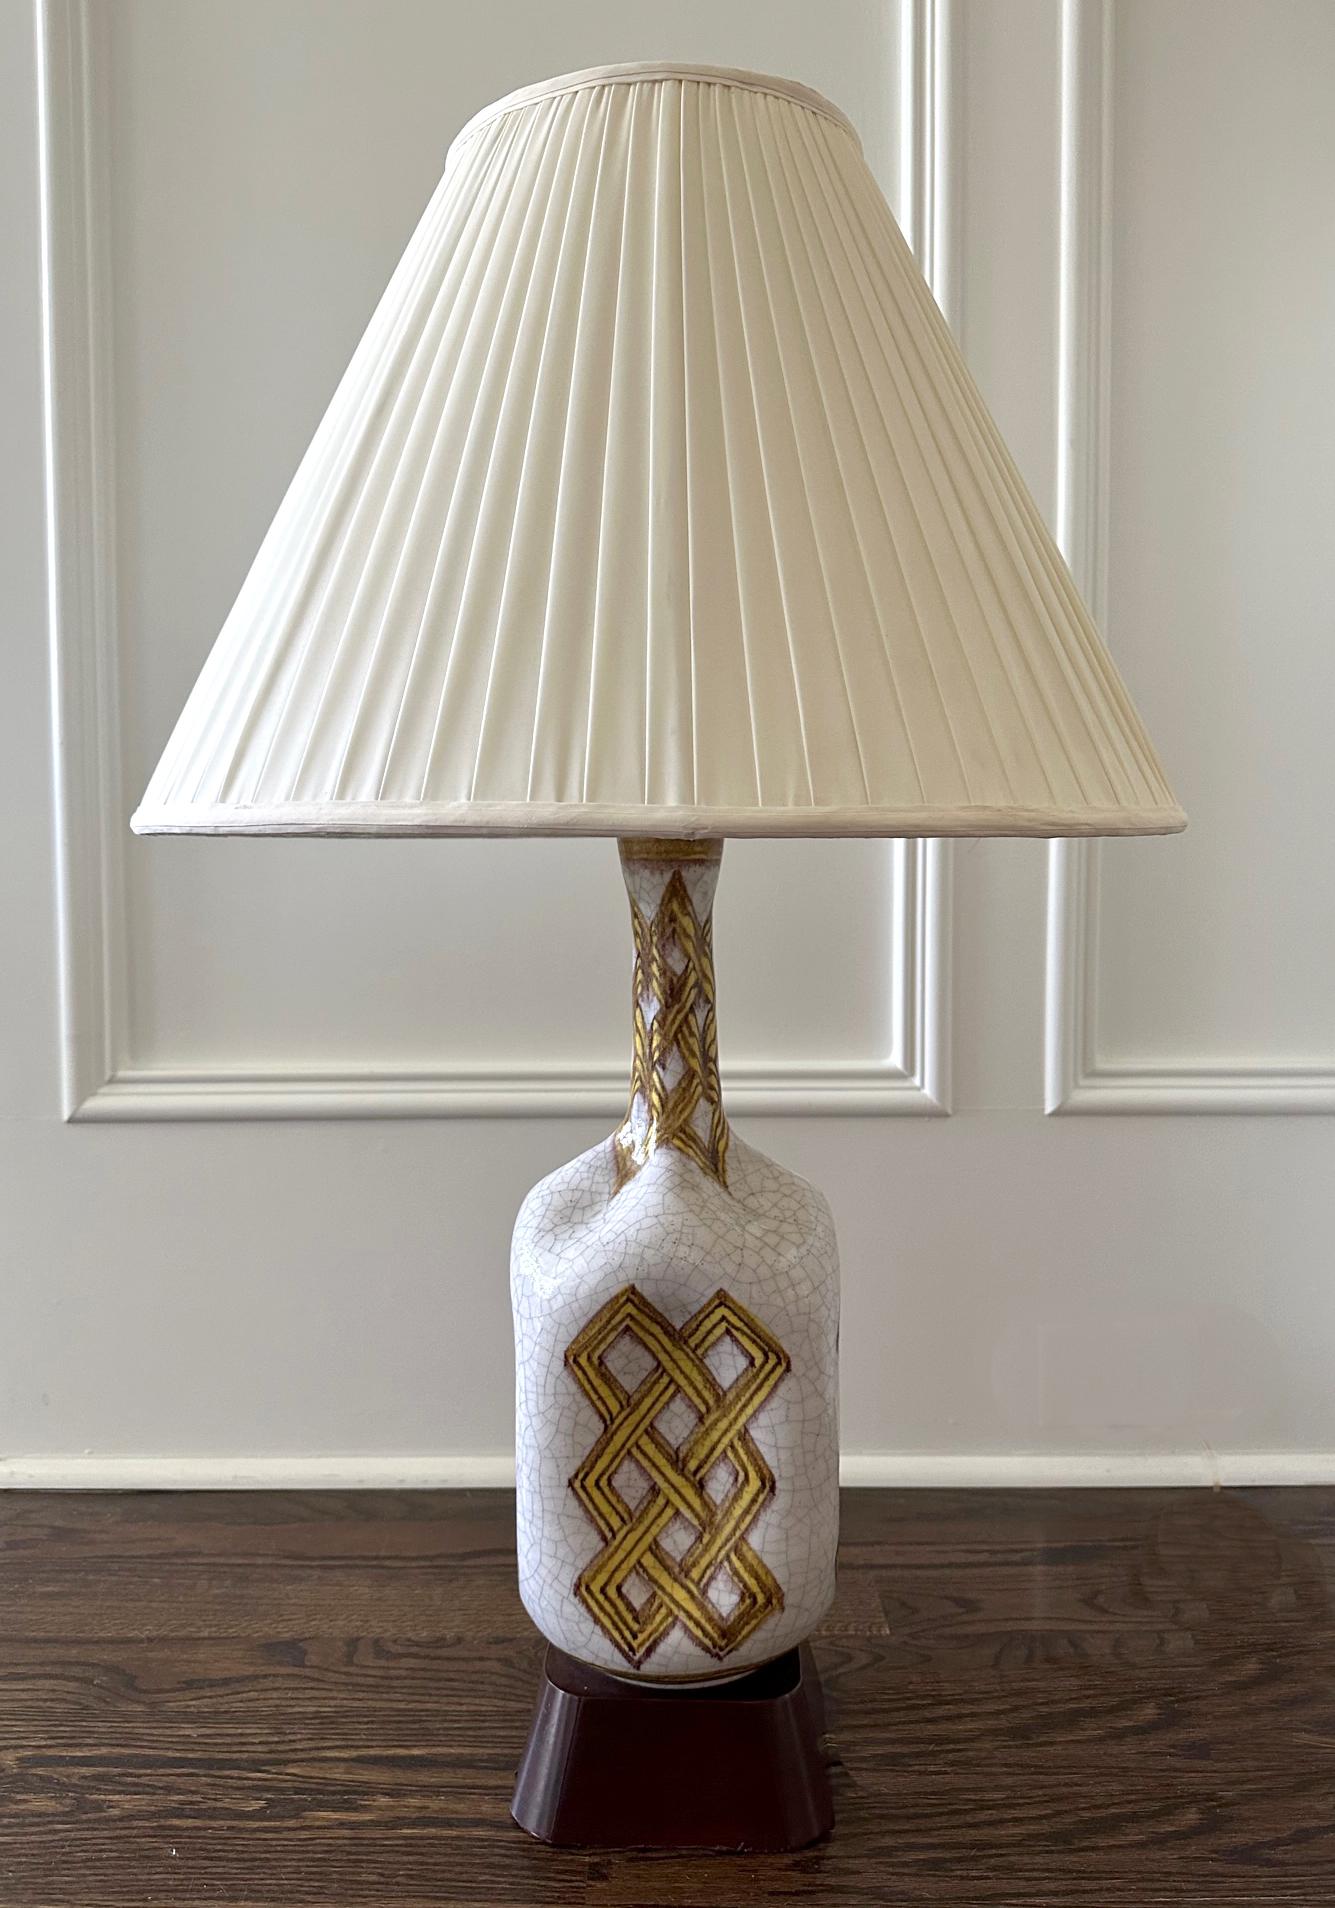 Grande lampe de table en céramique italienne conçue et réalisée par Guido Gambone (1909-1969), un artiste céramiste italien basé à Florence, vers les années 1950. La base de la lampe en grès a une forme de bouteille à long col et une taille